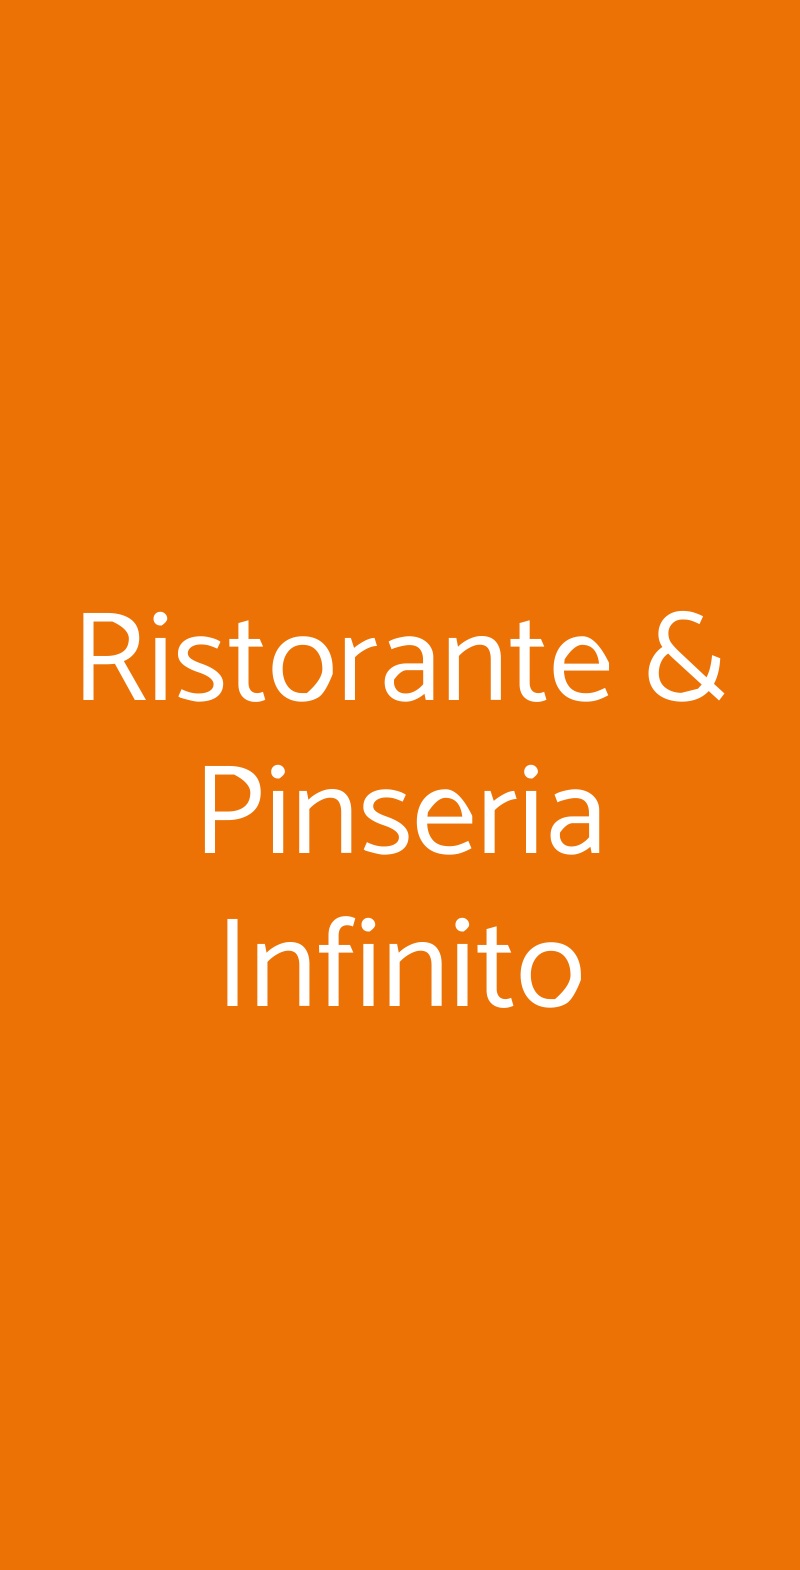 Ristorante & Pinseria Infinito Roma menù 1 pagina